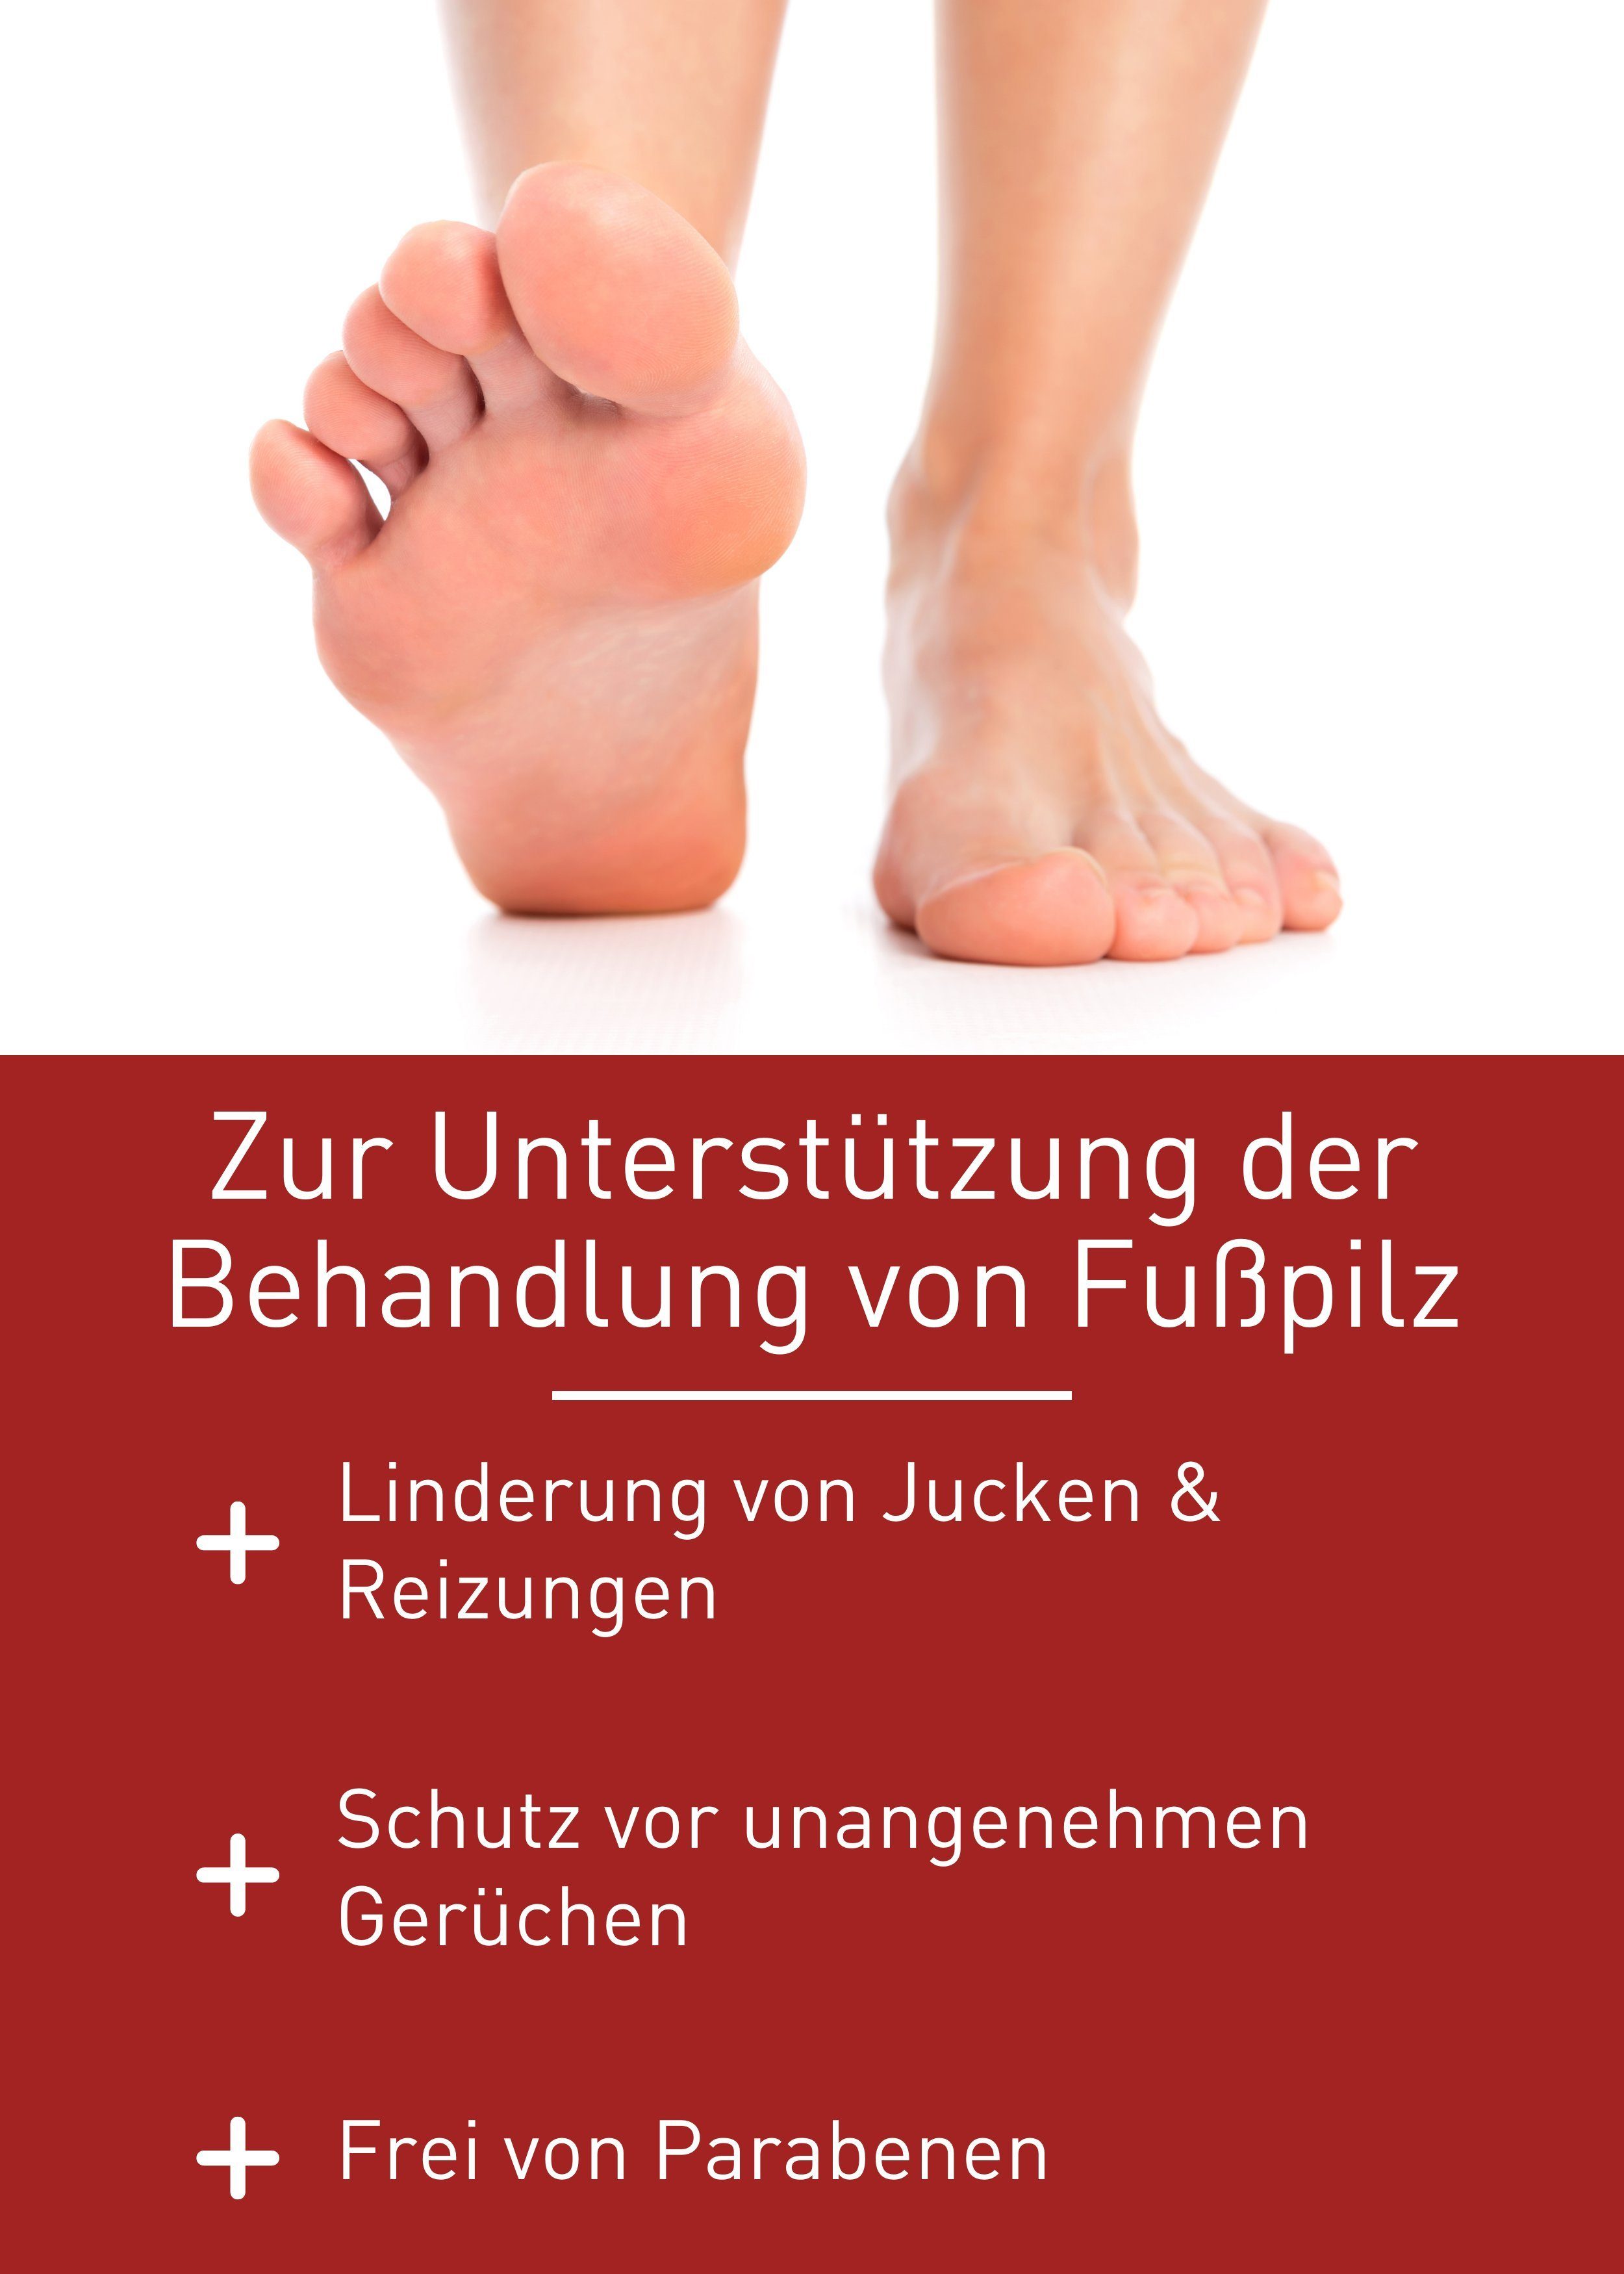 N1 Healthcare von Fußpflegecreme Fußpilz zur Behandlung Rezeptur patentierte Gel Fußpilz, Medizinprodukt